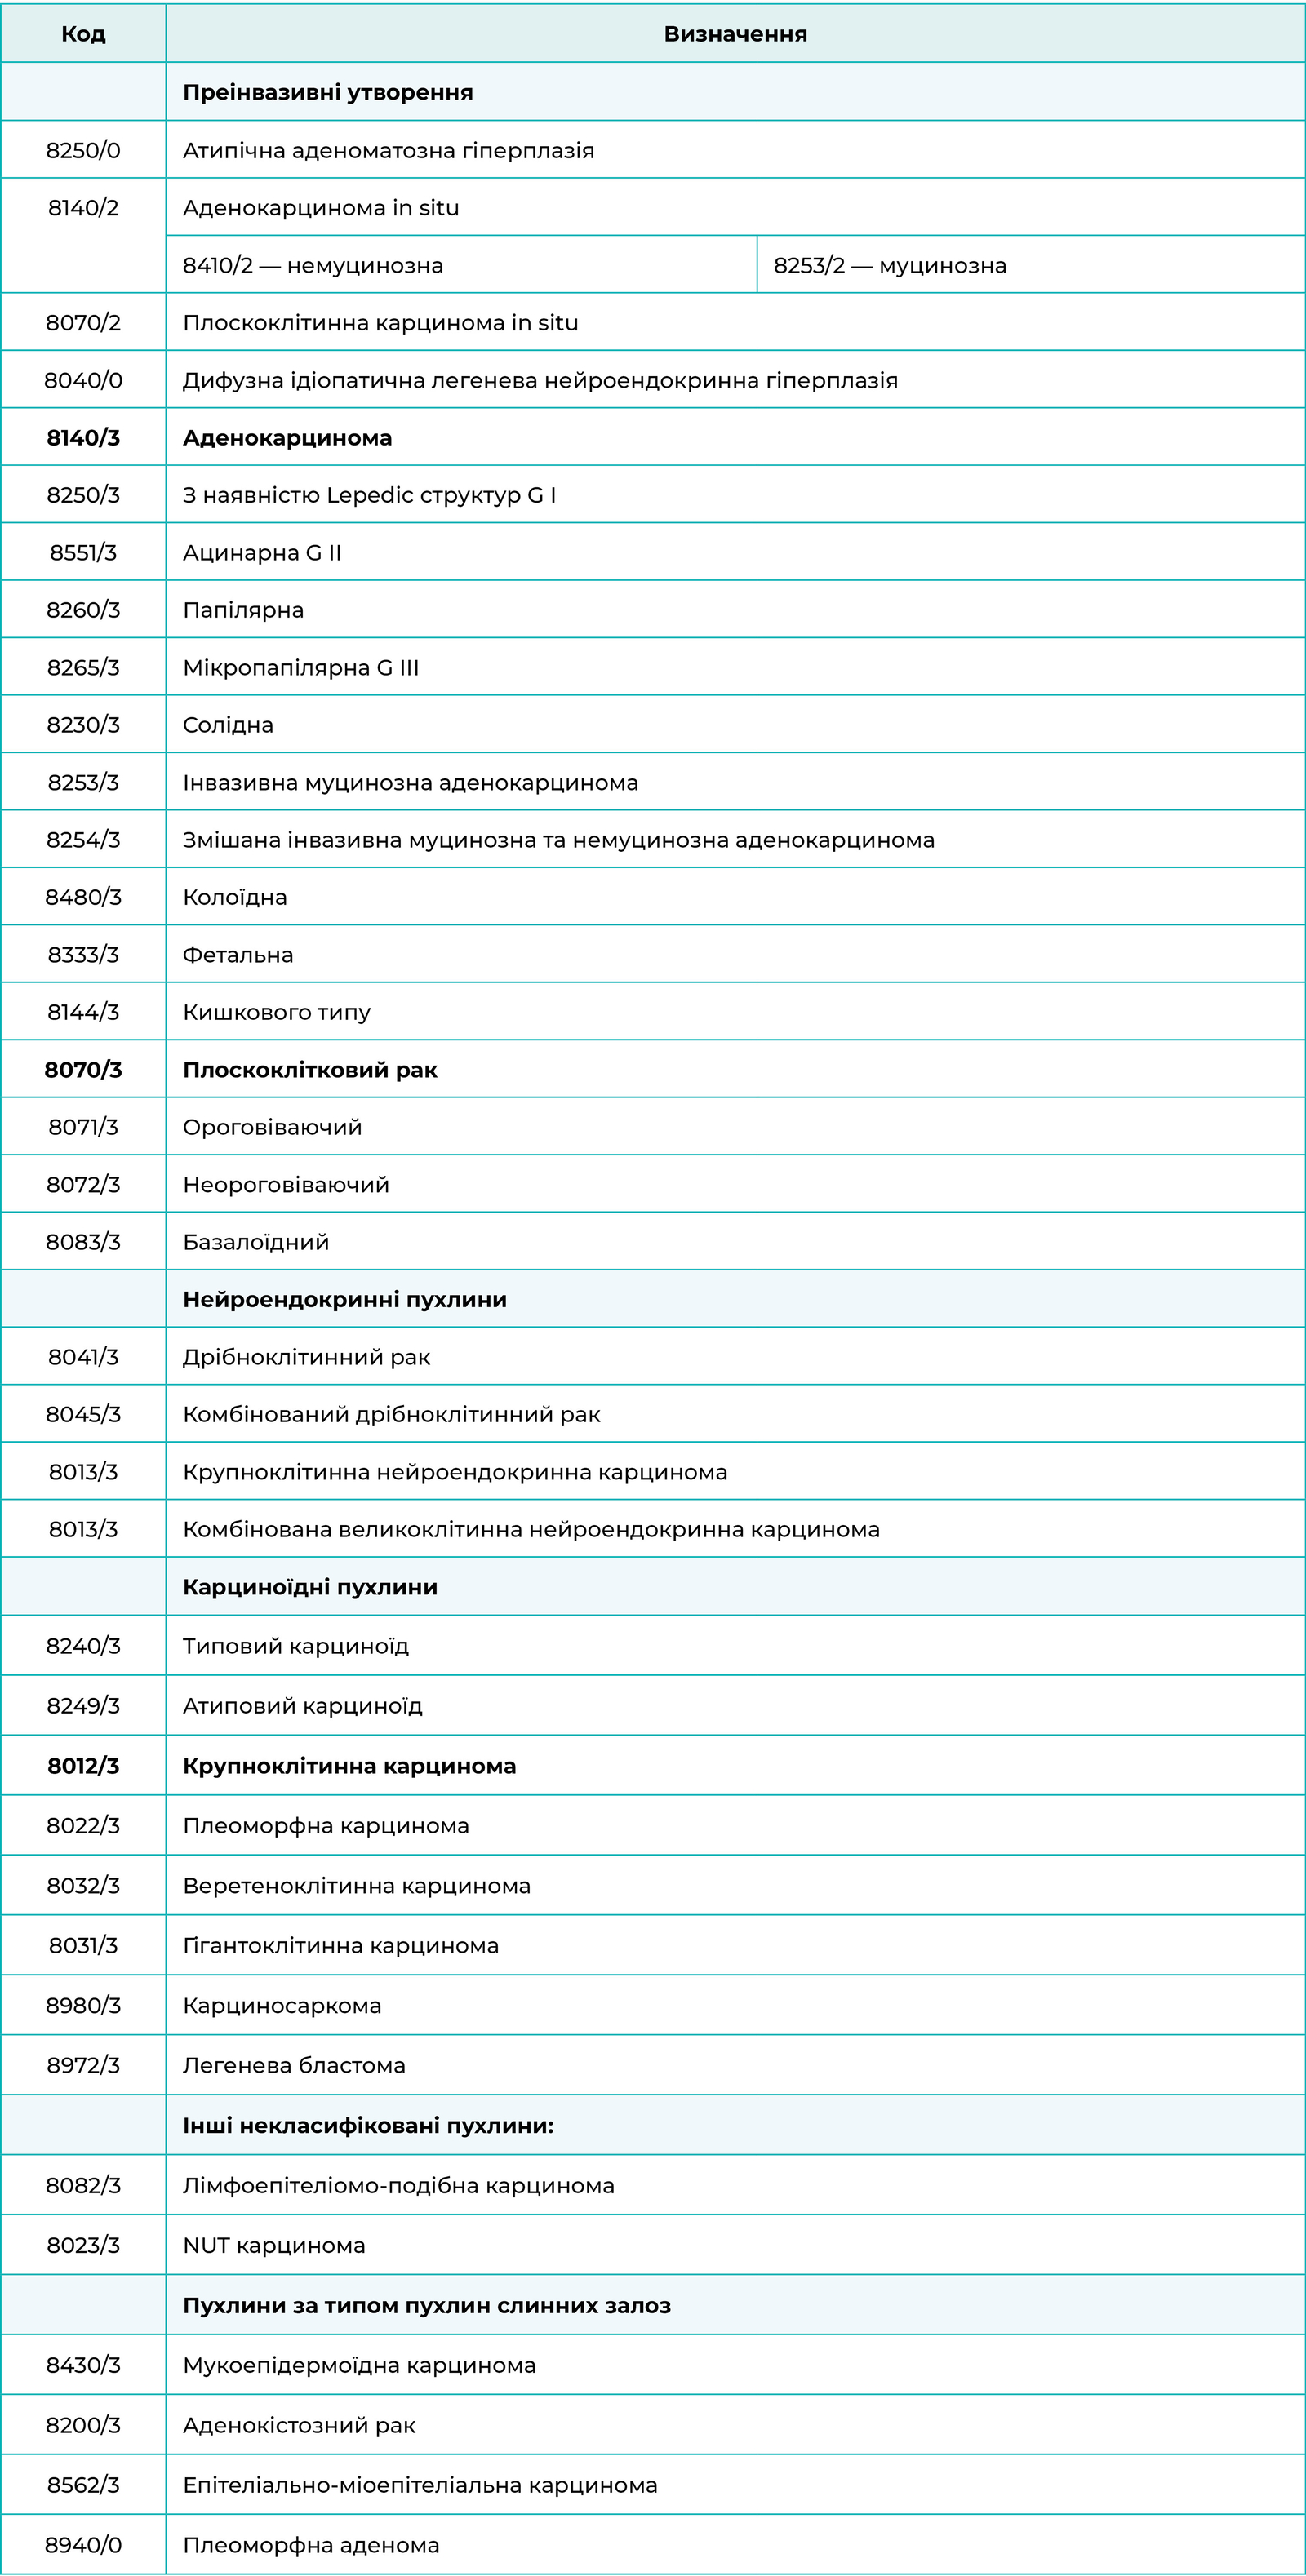 Міжнародна гістологічна класифікація раку легені (МКХ-О, 2015р.)